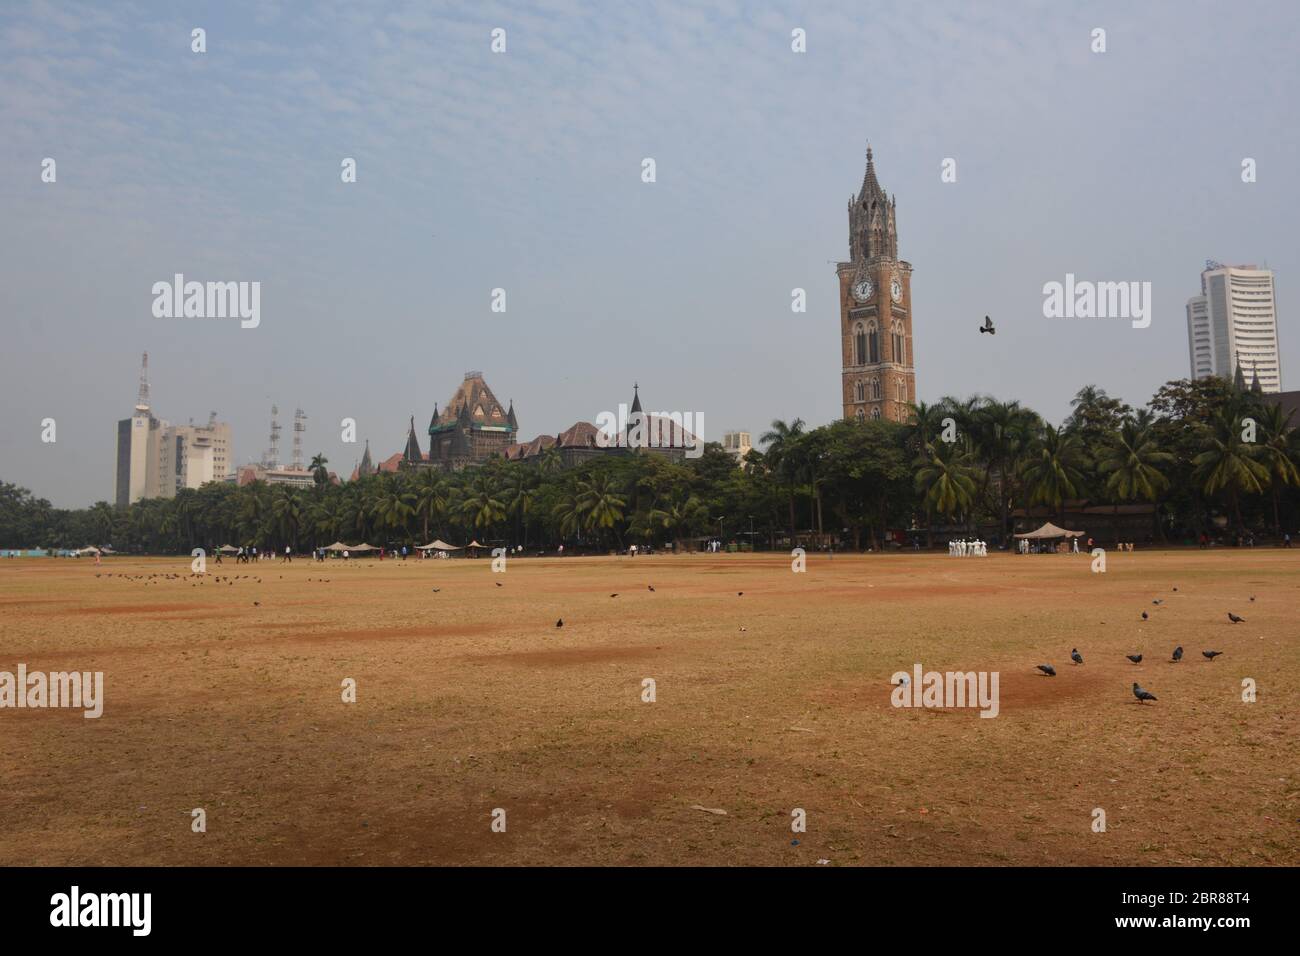 Un jeu de cricket très anglais a lieu sur l'Oval Maidan, tracté par la tour de l'horloge du Rajabai, 'le Big Ben de l'Inde', terminé en 1878 . Banque D'Images